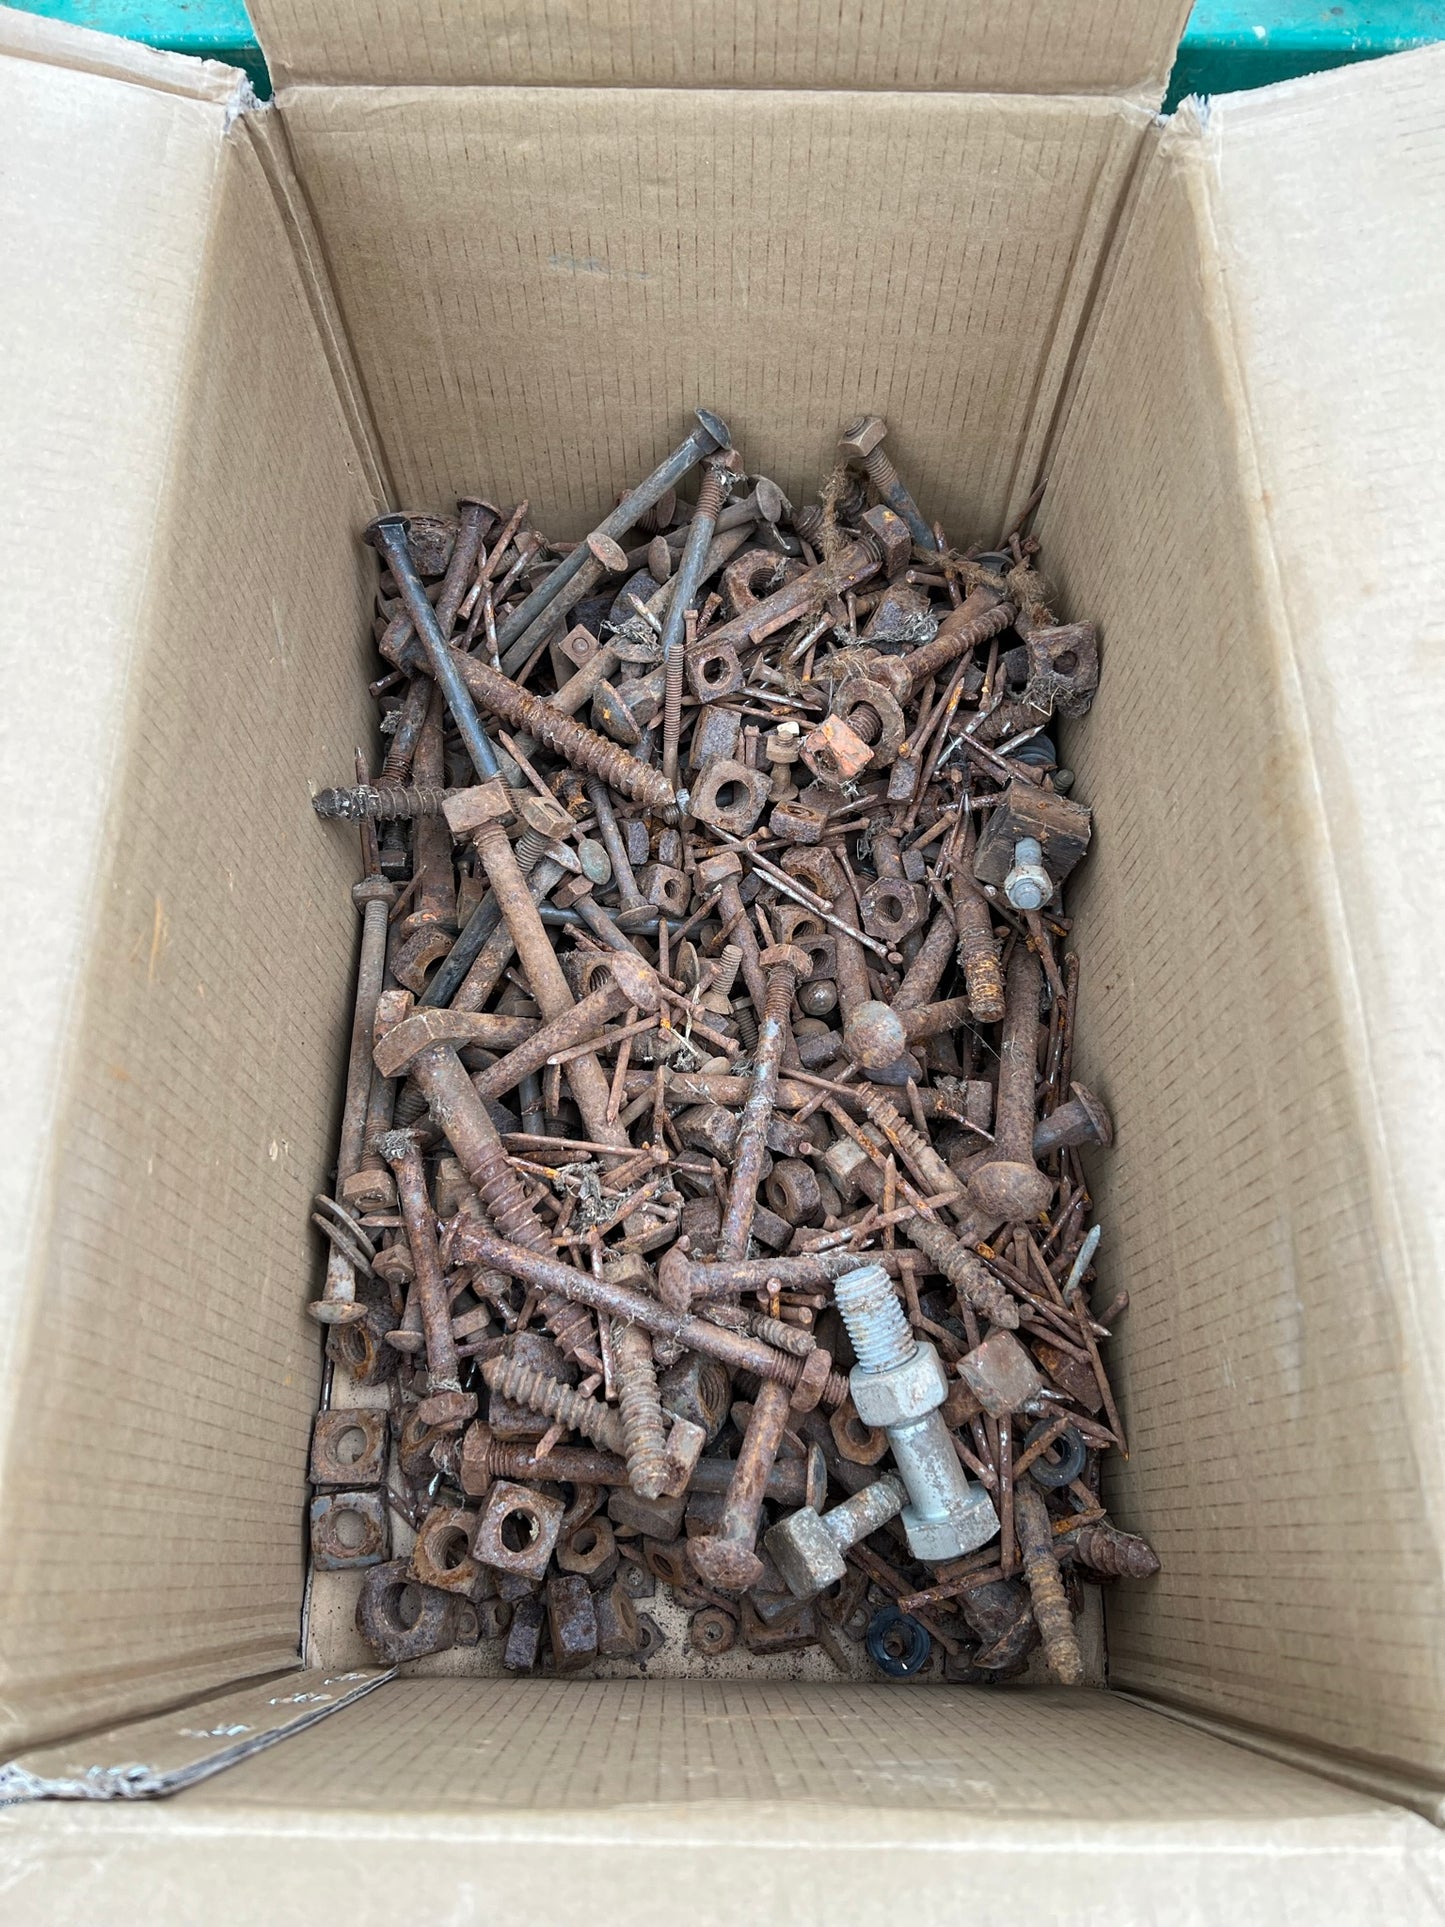 Box of Mixed Vintage Rusty Nuts Bolts Nails Job Lot Project Patina